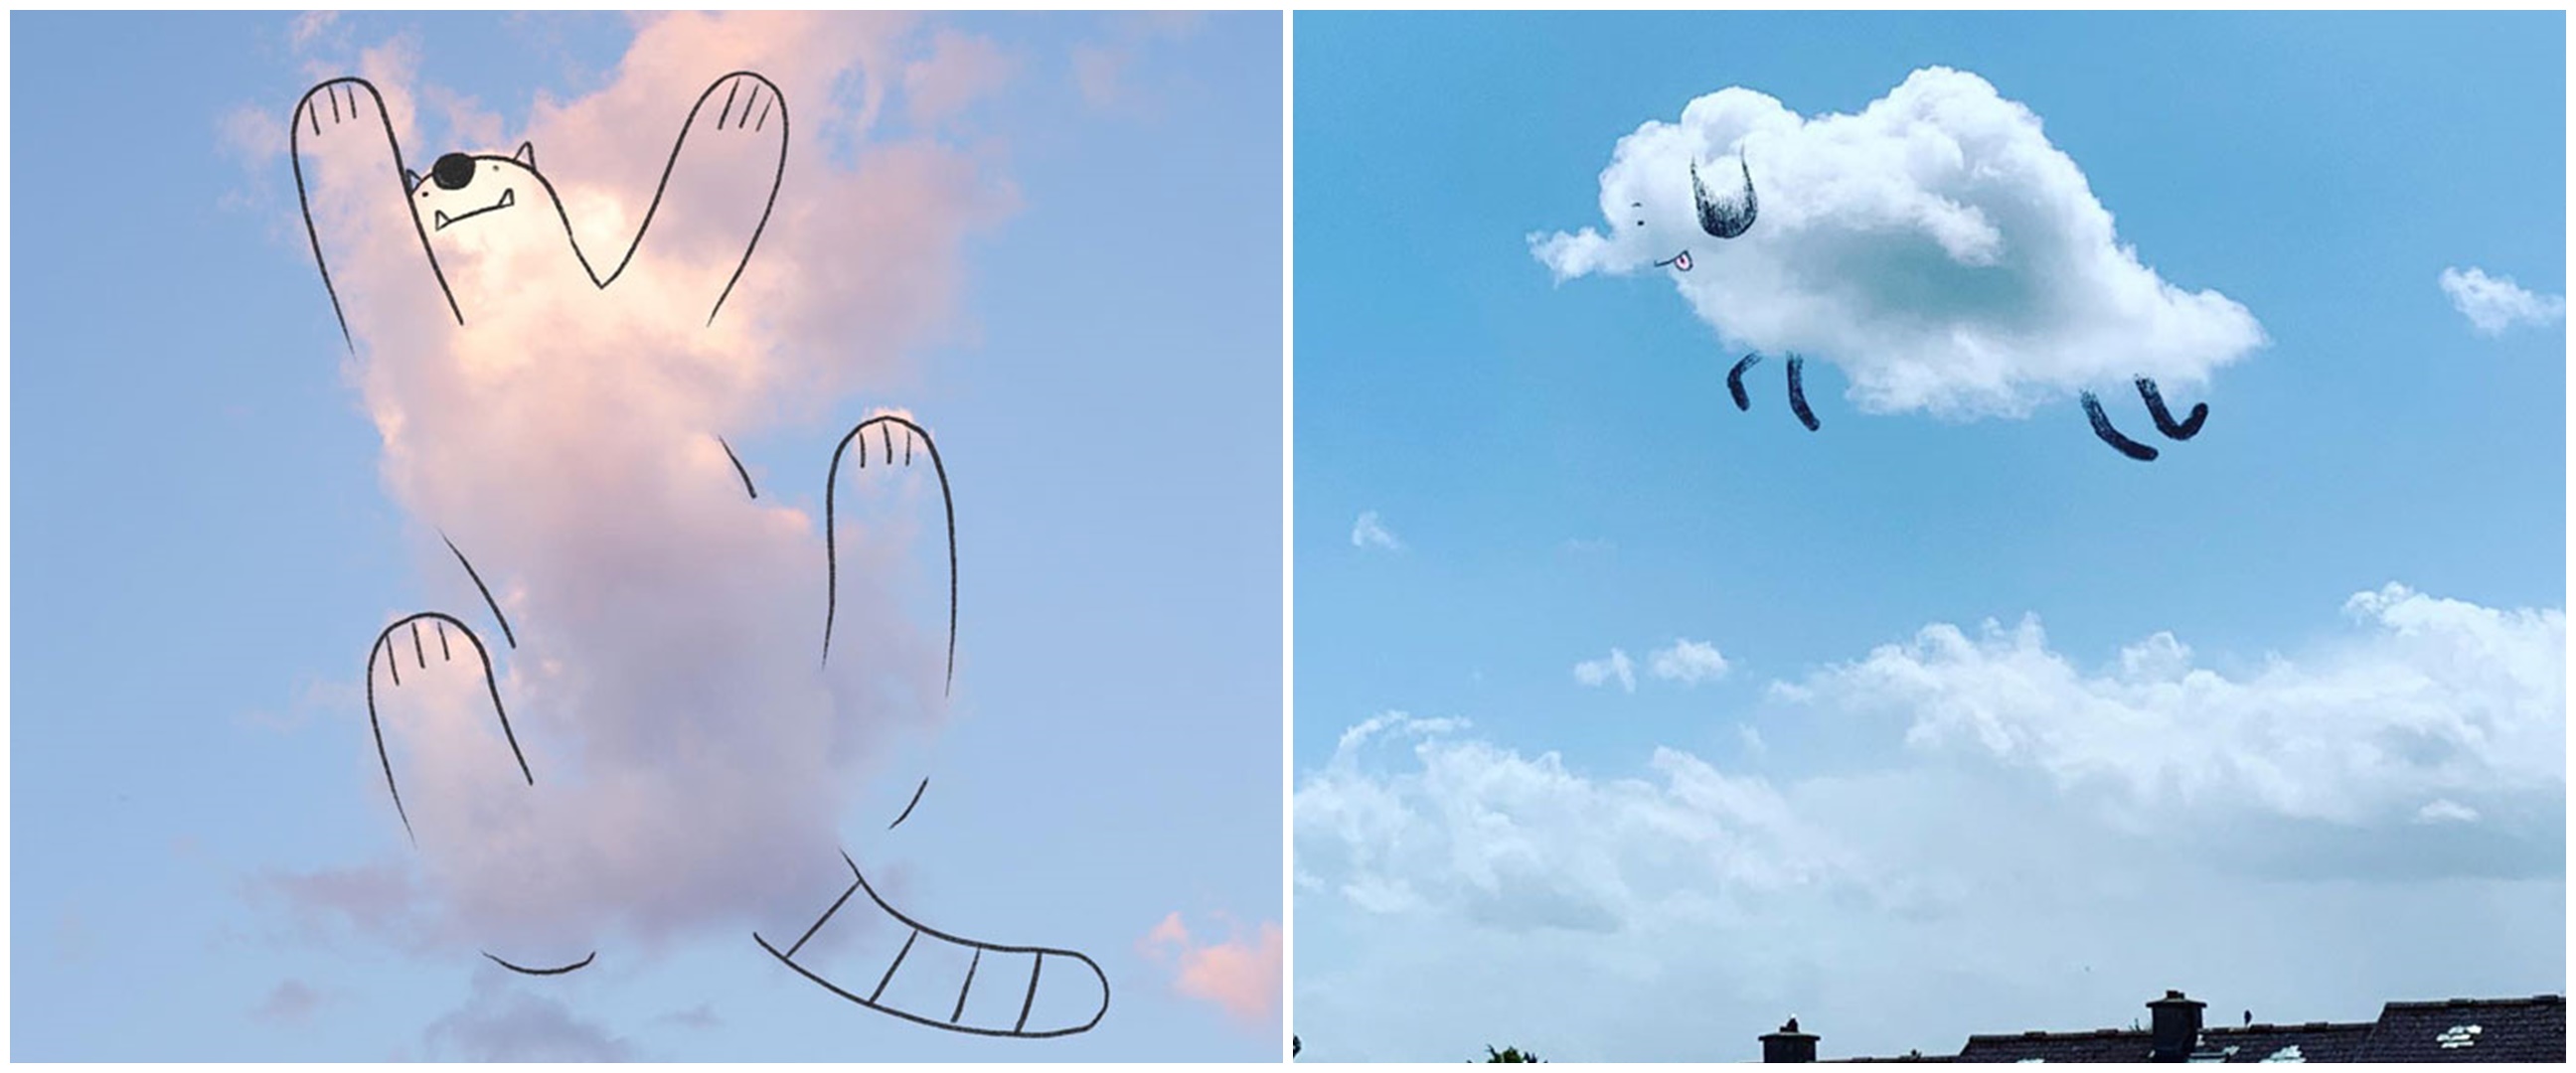 10 Gambar  di atas awan ini bukti kreatifnya imajinasi  